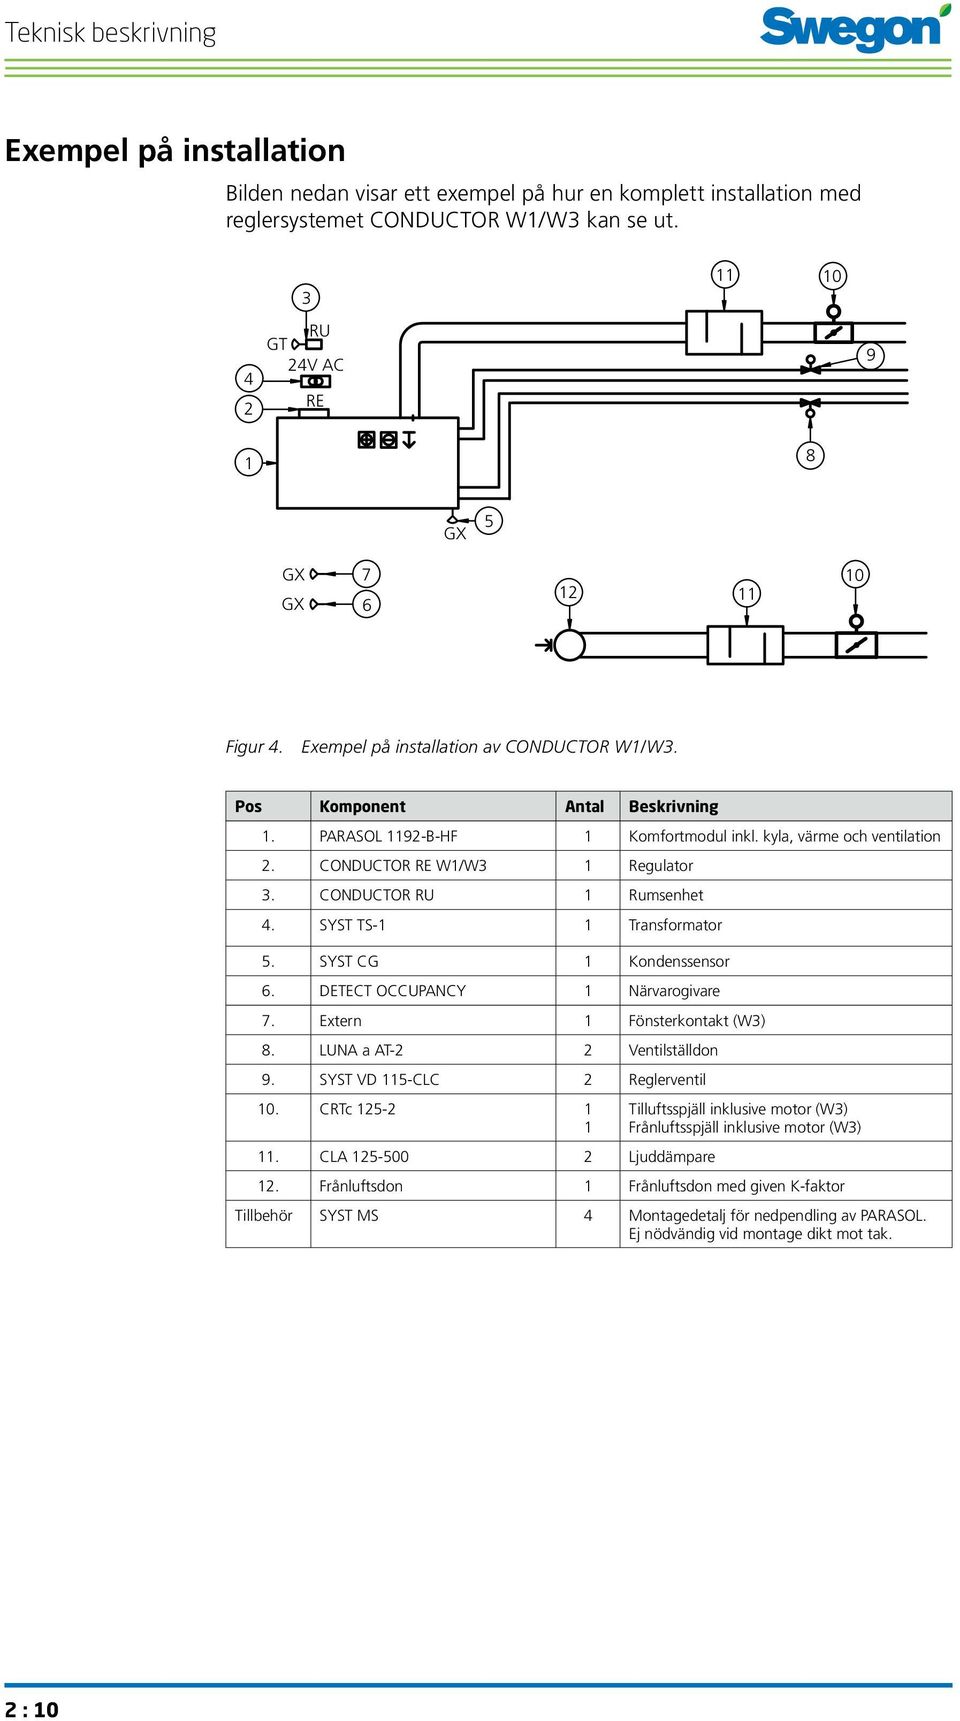 kyla, värme och ventilation 2. CONDUCTOR RE W1/W3 1 Regulator 3. CONDUCTOR RU 1 Rumsenhet 4. SYST TS-1 1 Transformator 5. SYST CG 1 Kondenssensor 6. DETECT OCCUPANCY 1 Närvarogivare 7.